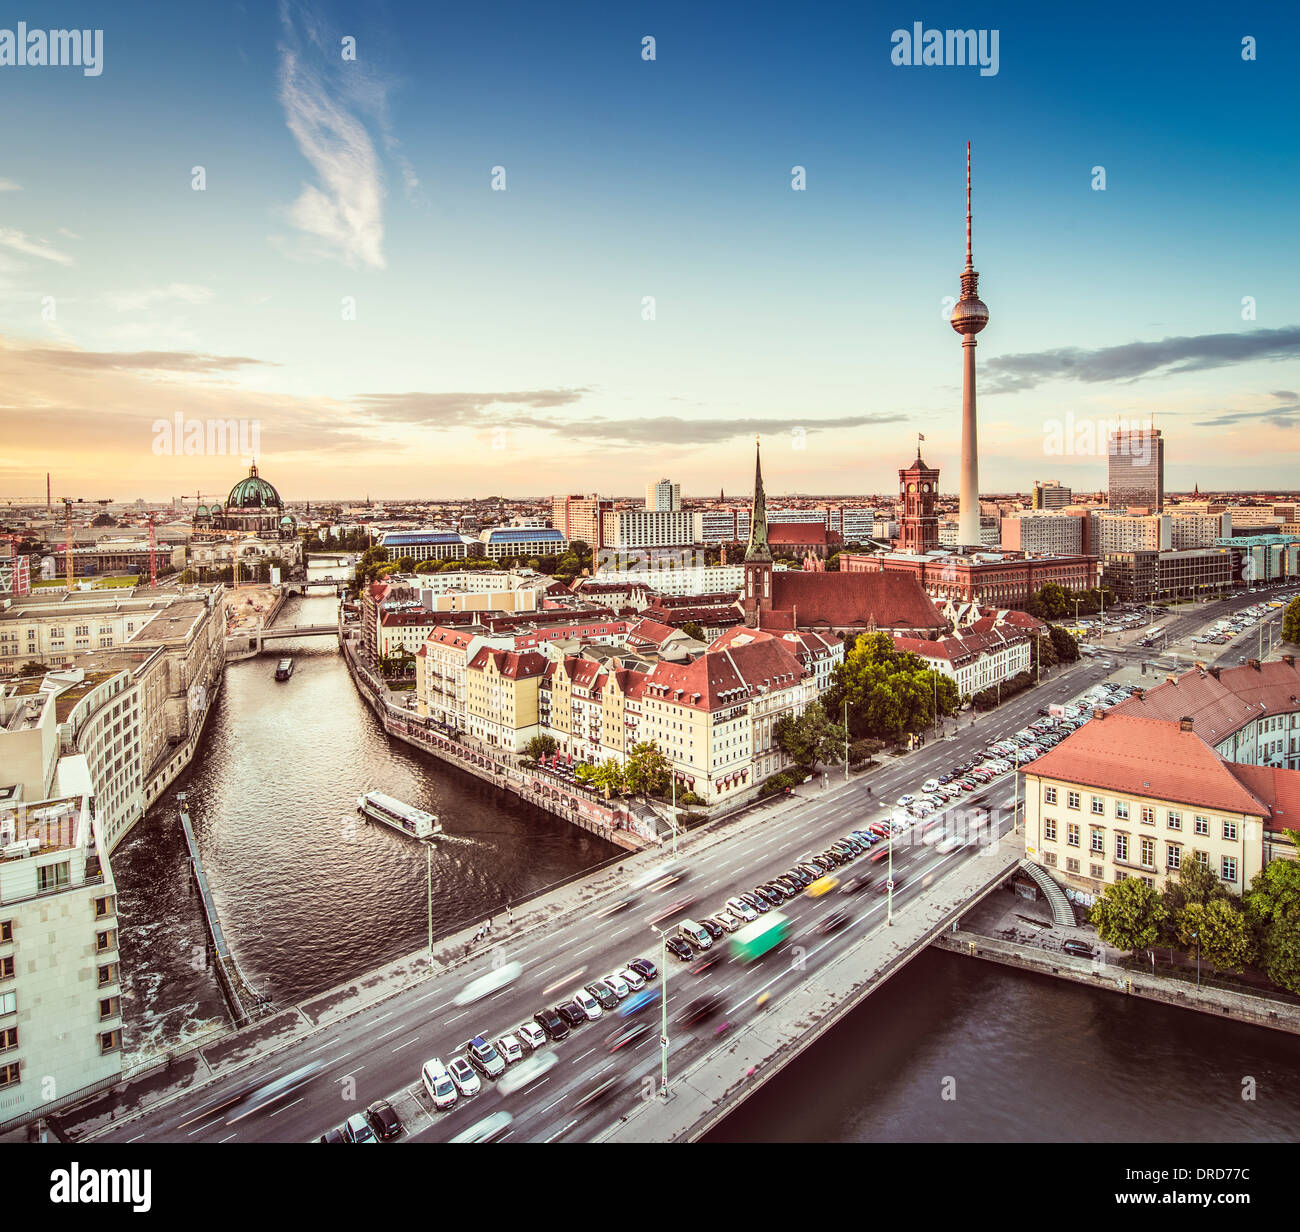 Berlín, Alemania vistos desde arriba del río Spree. Foto de stock